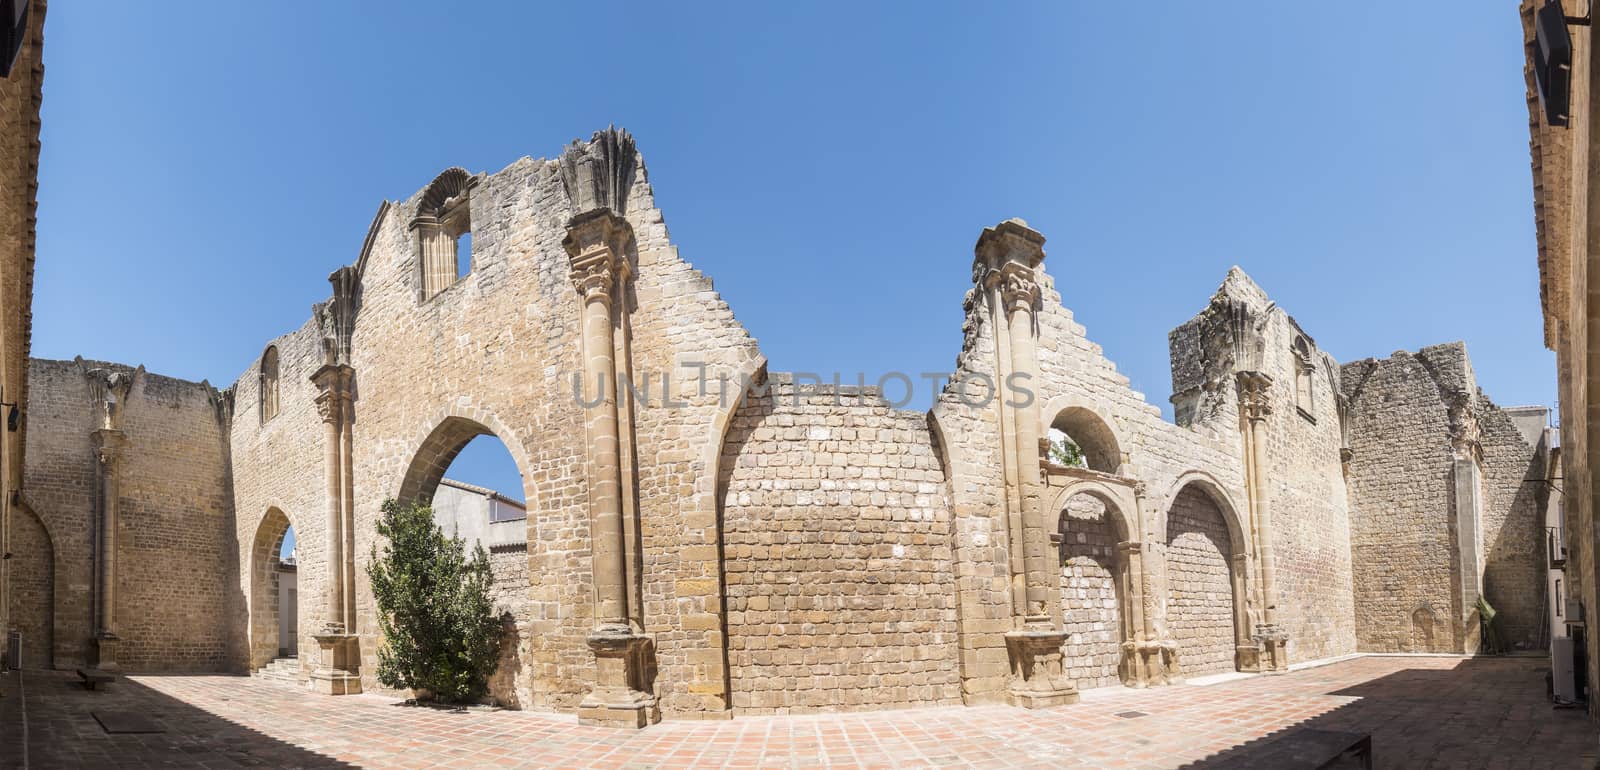 Salvador church ruins, Baeza, Jaen, Spain by max8xam